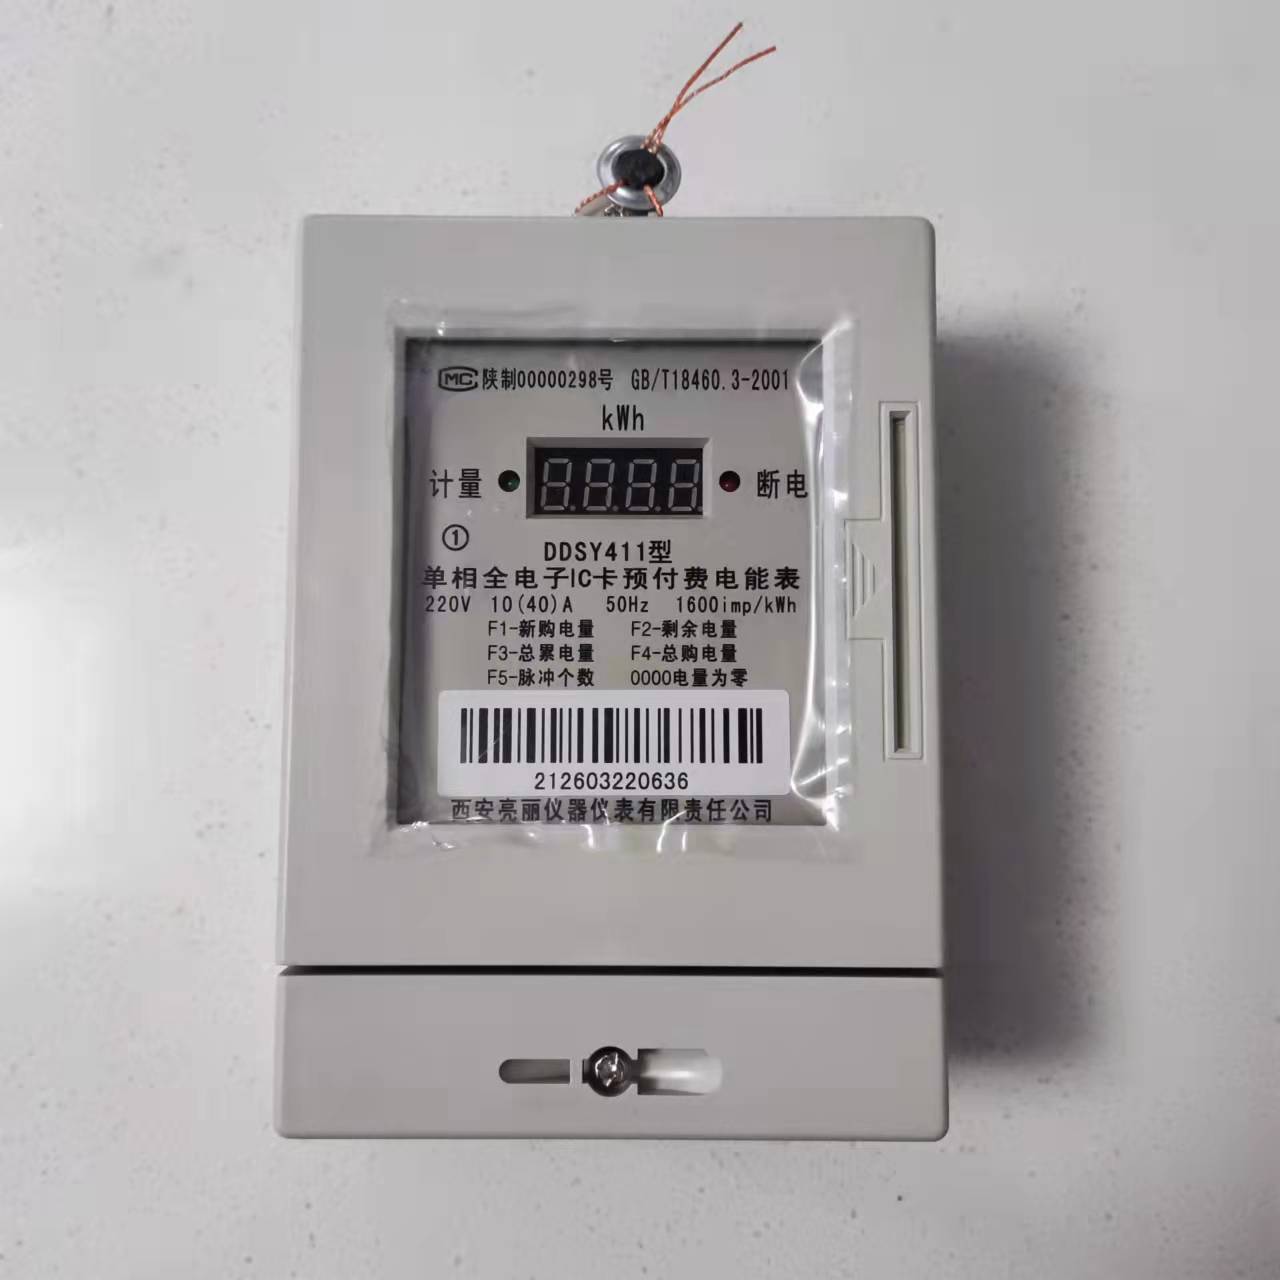 DTSY411亮丽电表供应商-来电询价